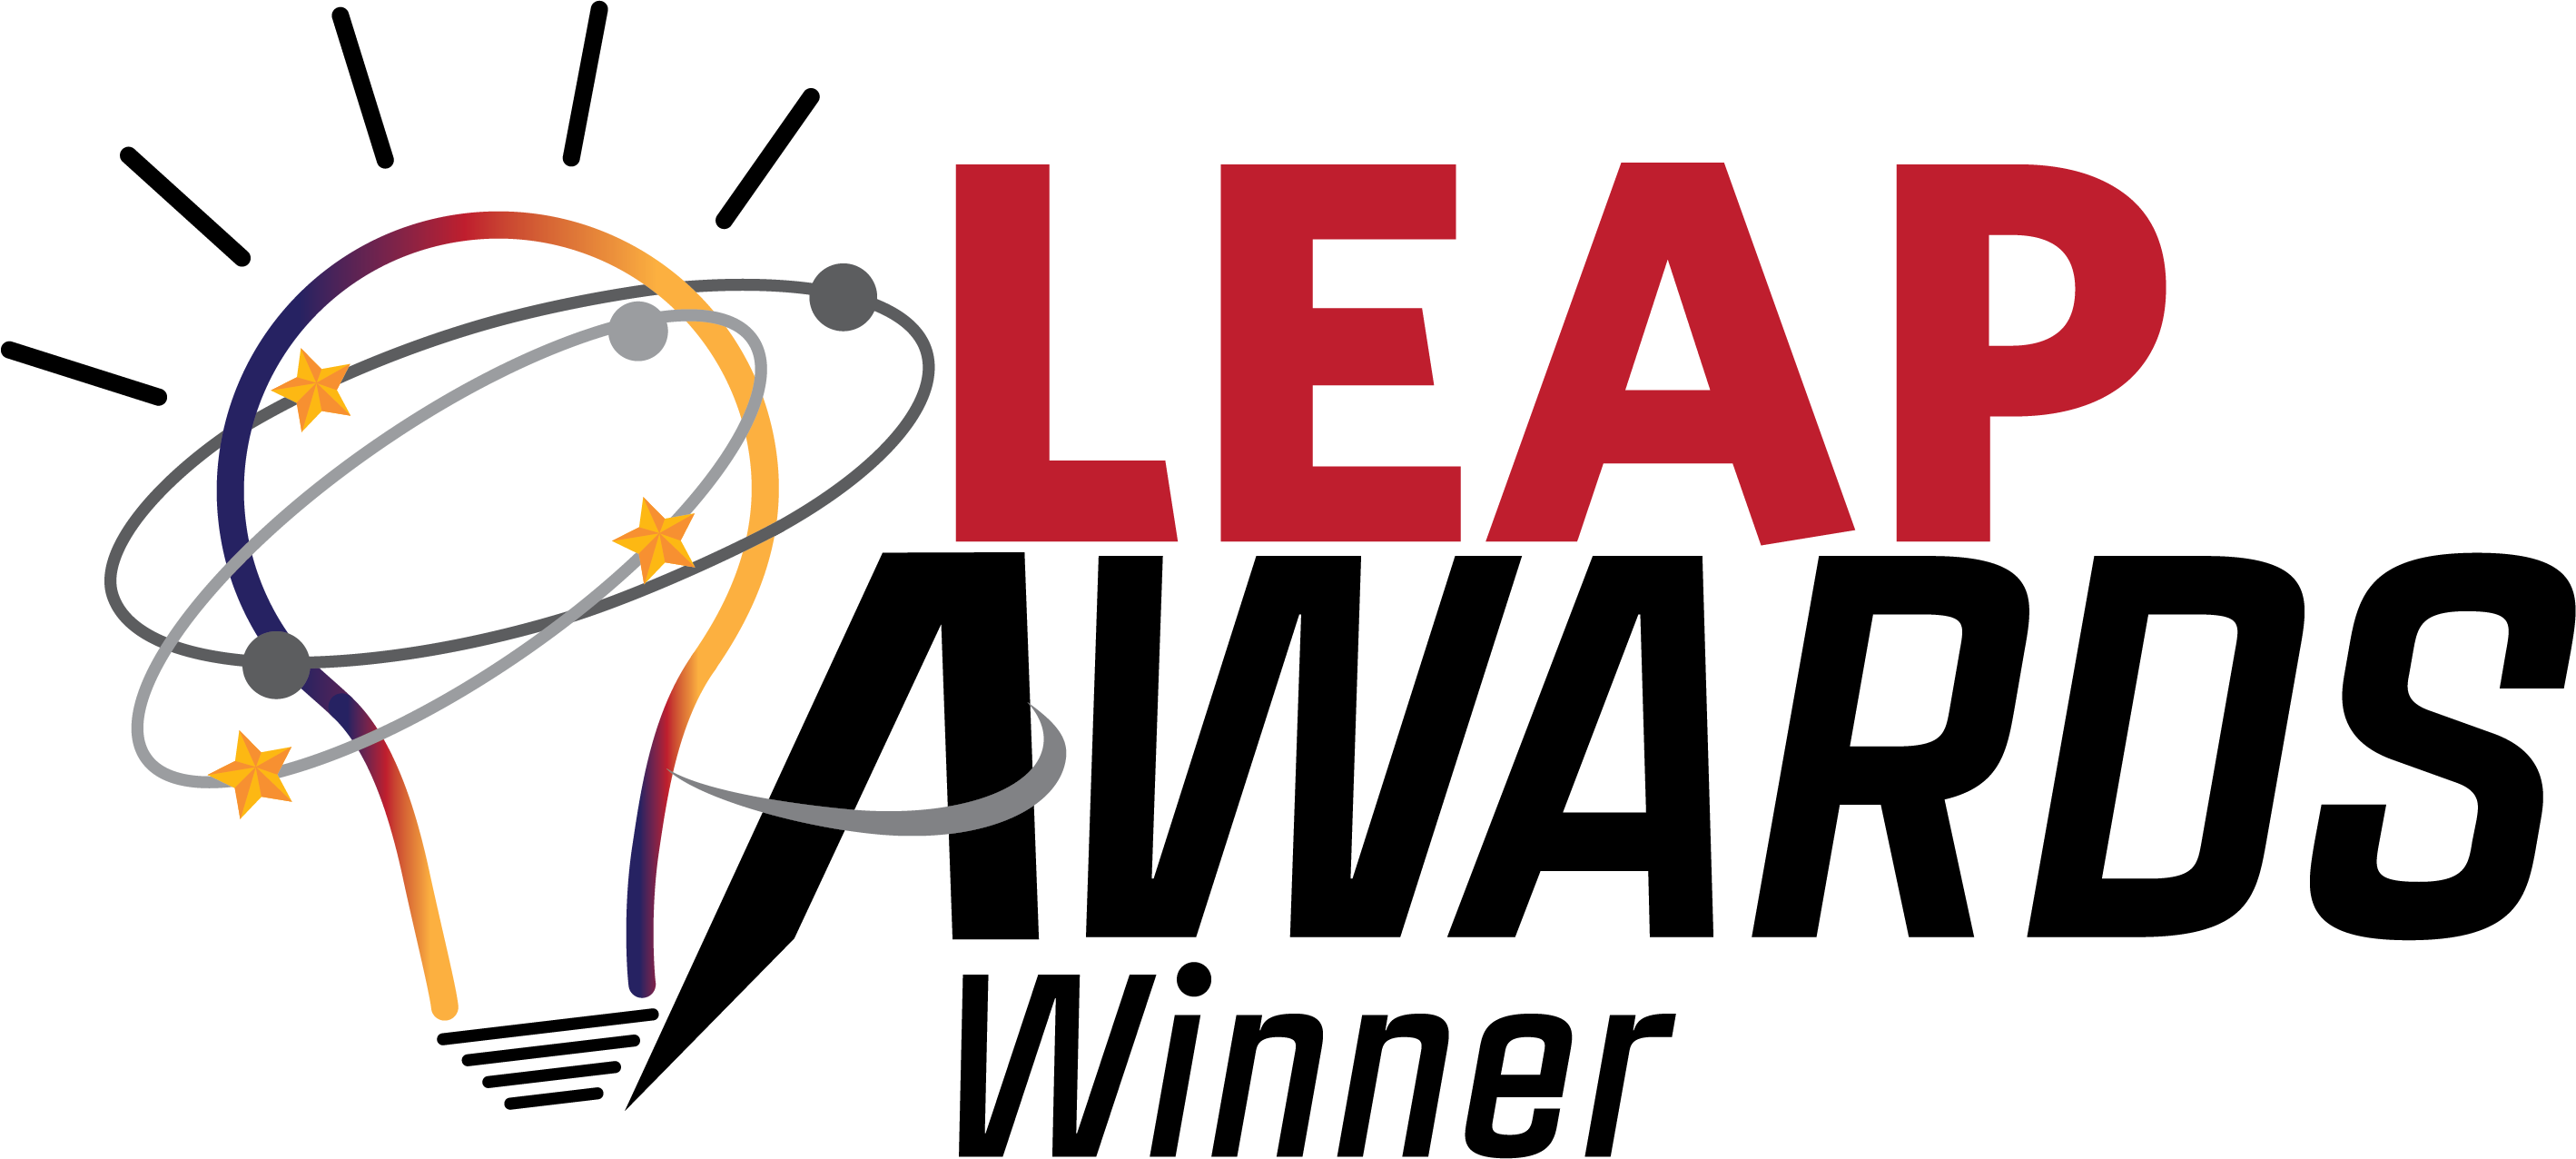 Leap Award Winner